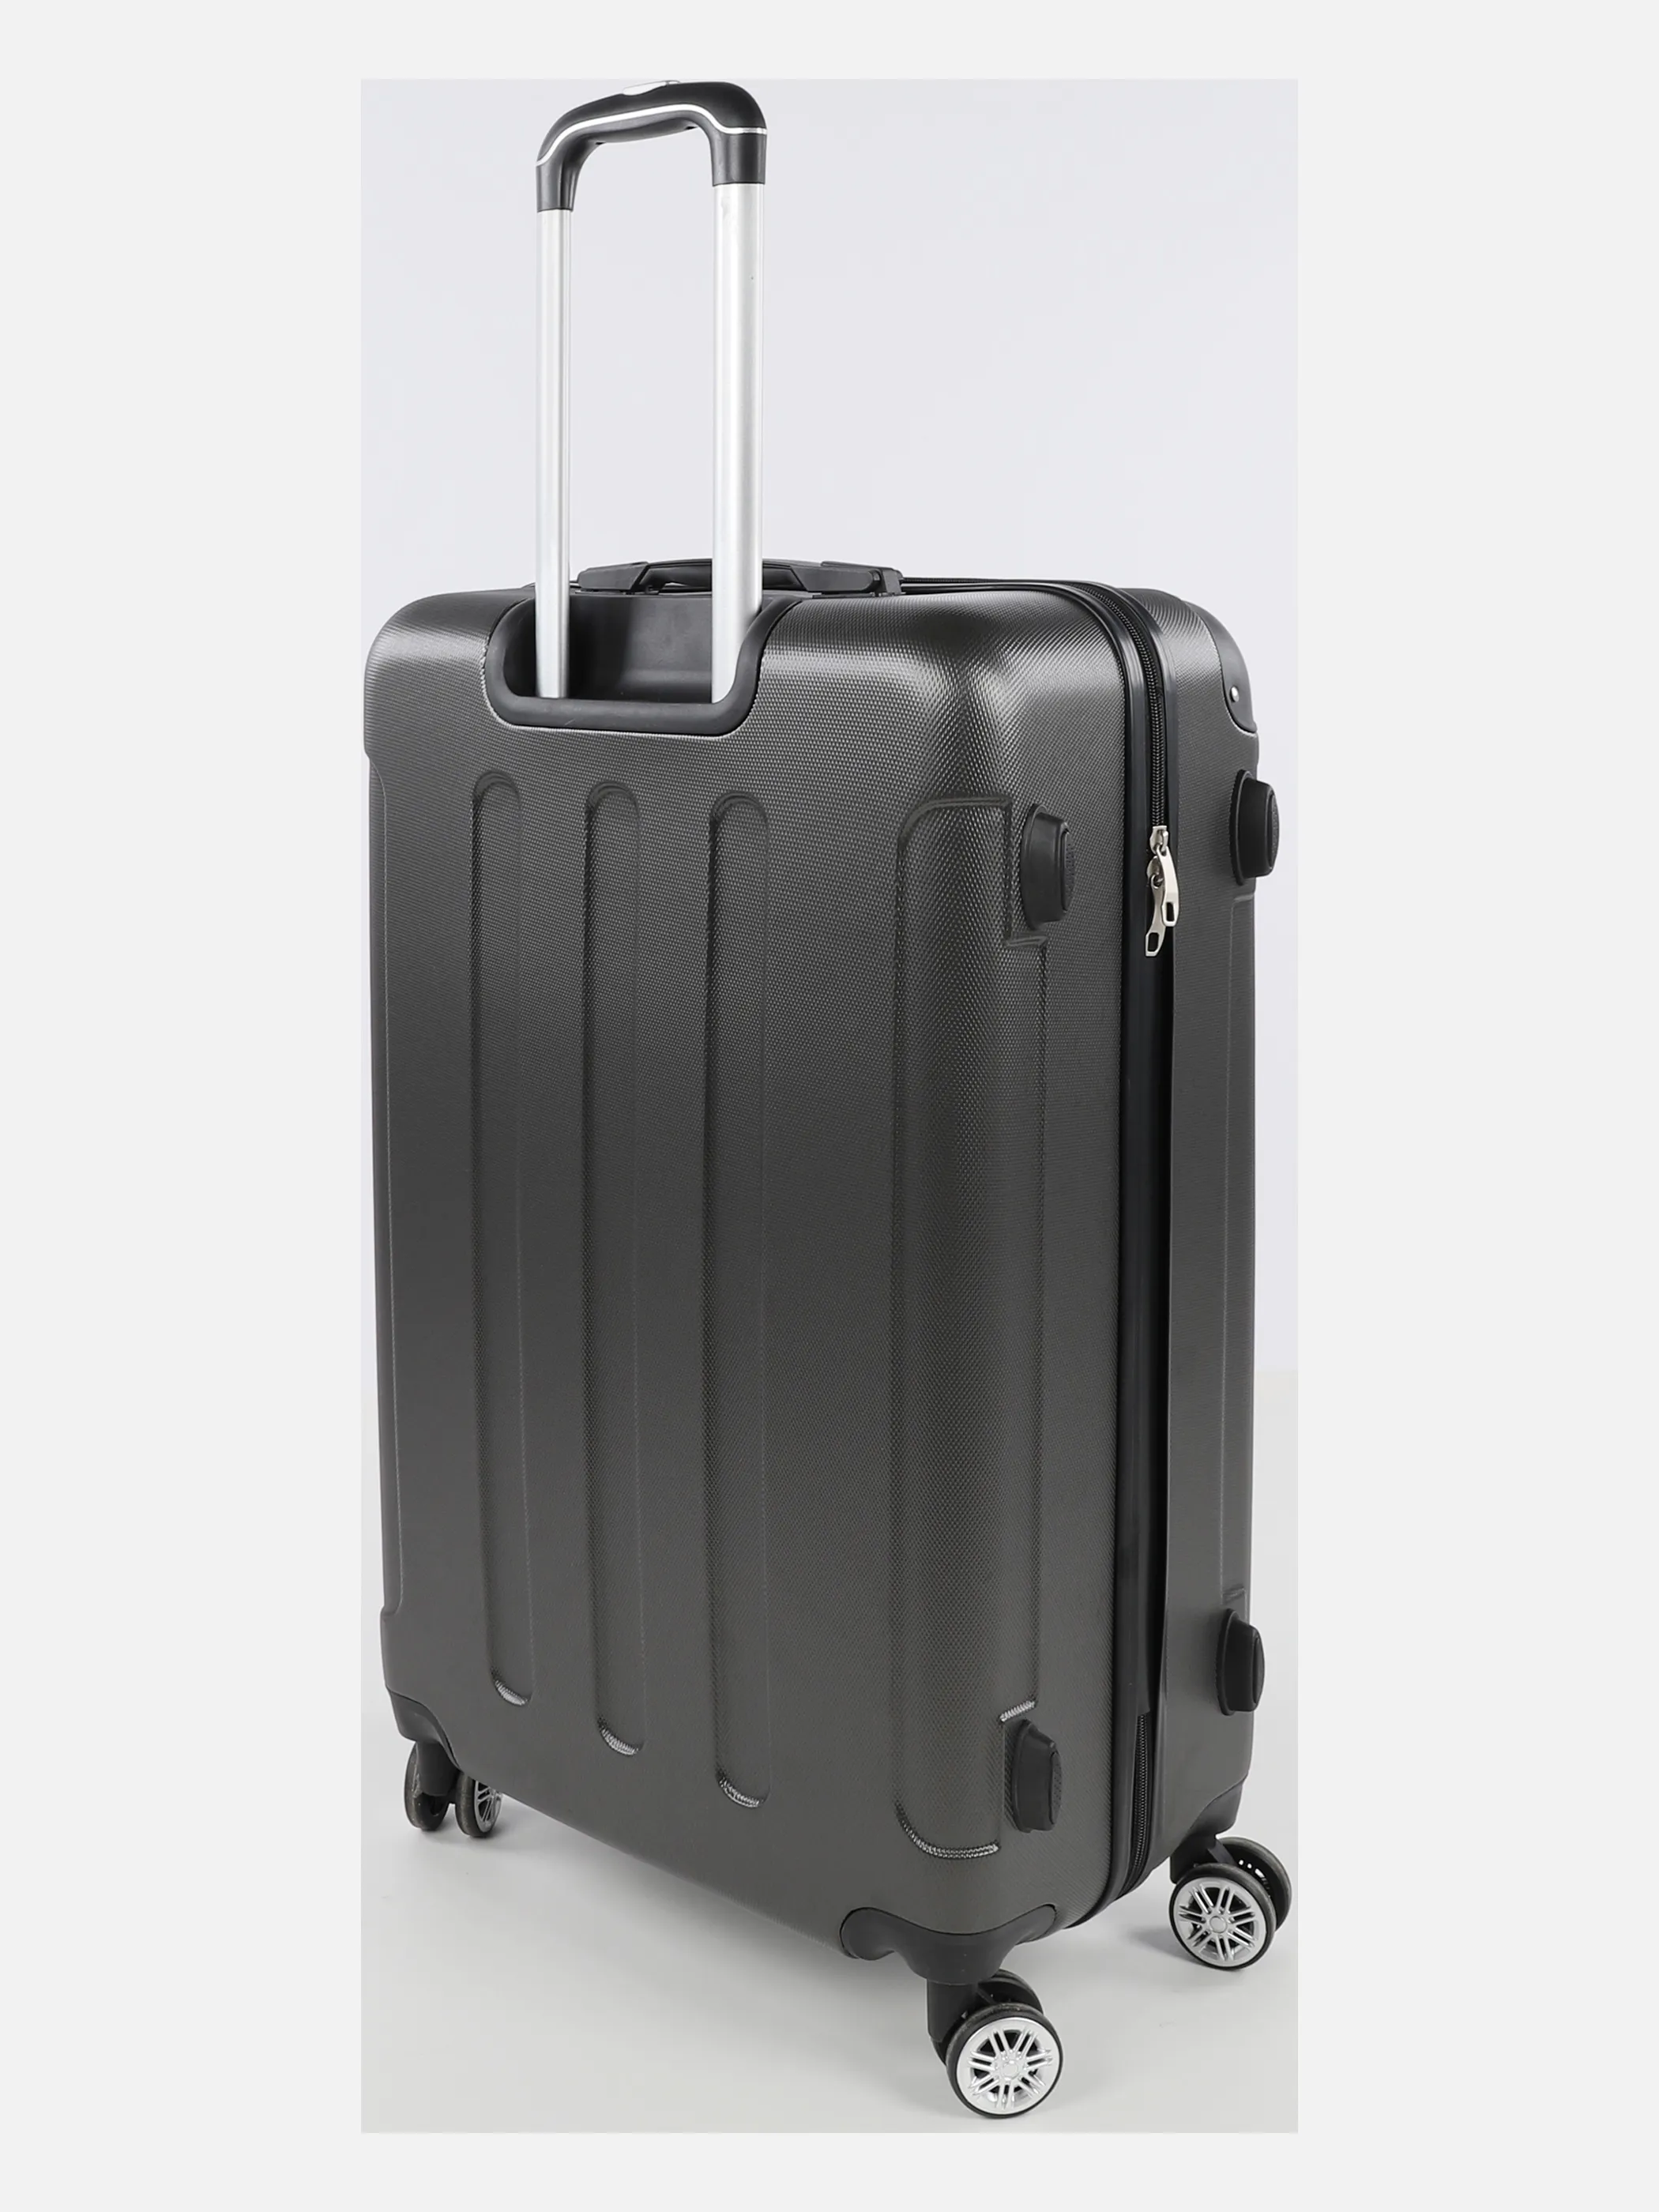 Koffer/Taschen Koffer Avalon 77x50x28 Grau 884544 ANTHRA 2